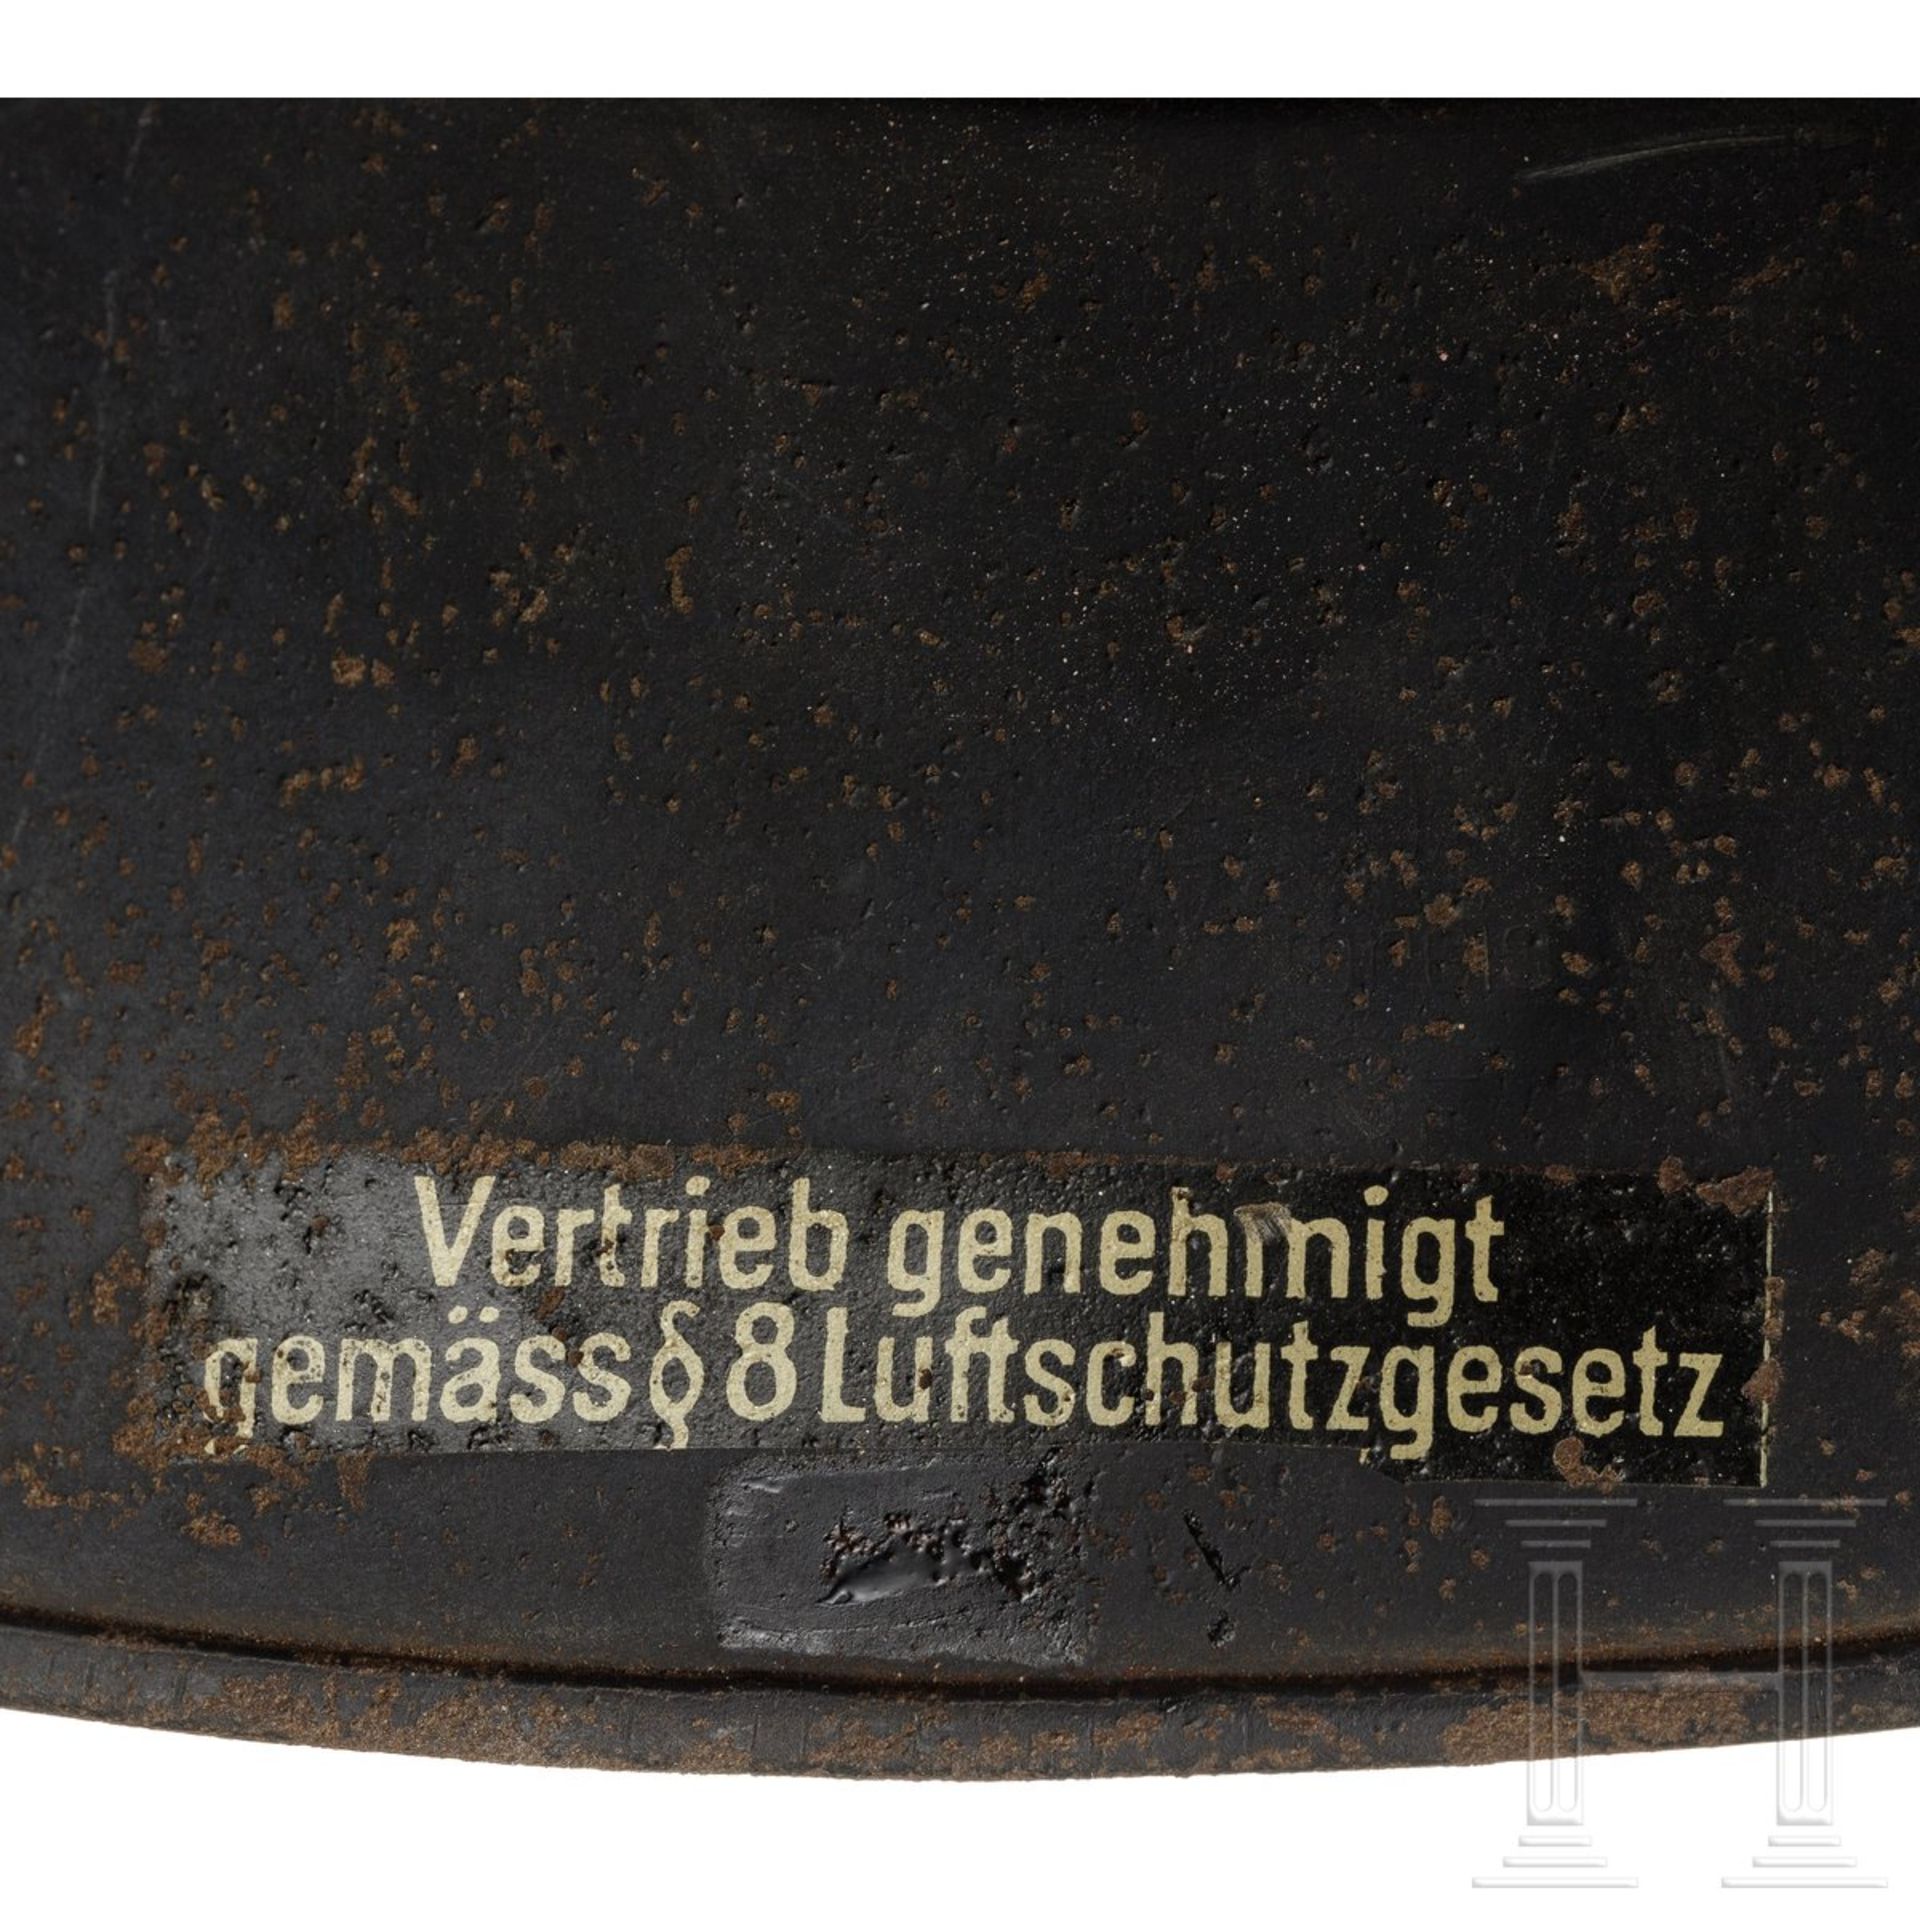 Stahlhelm "Gladiator" für Luftschutz, deutsch, um 1940 - Bild 5 aus 5